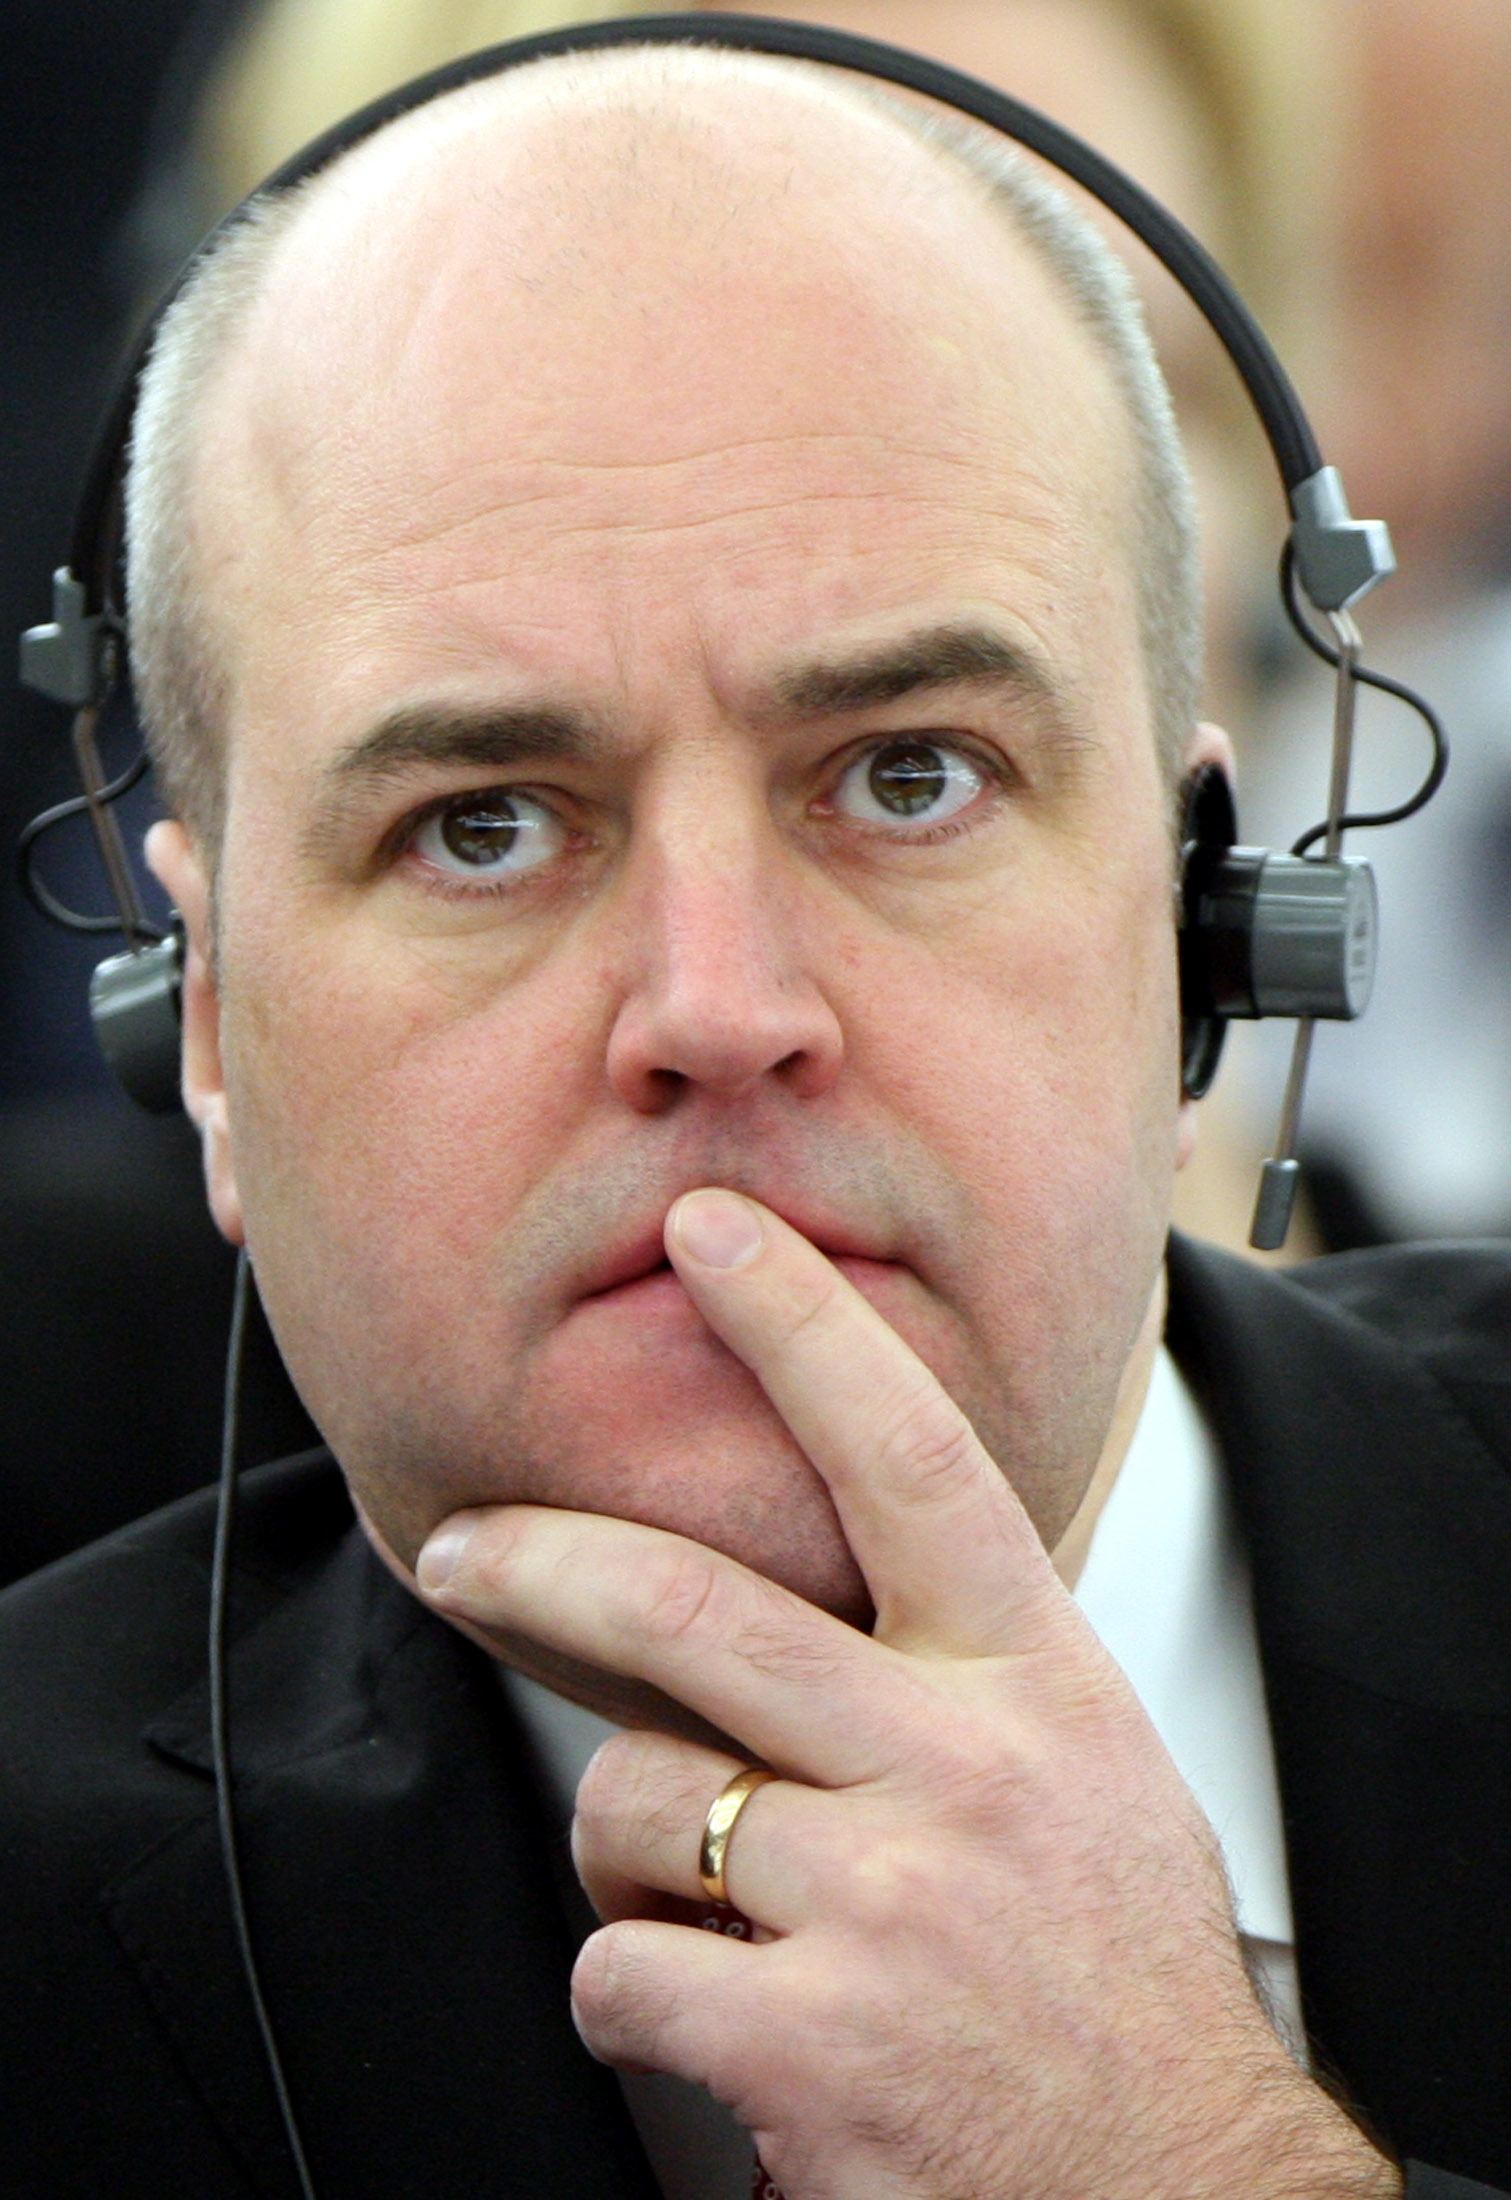 Men kommer Reinfeldt att nappa?